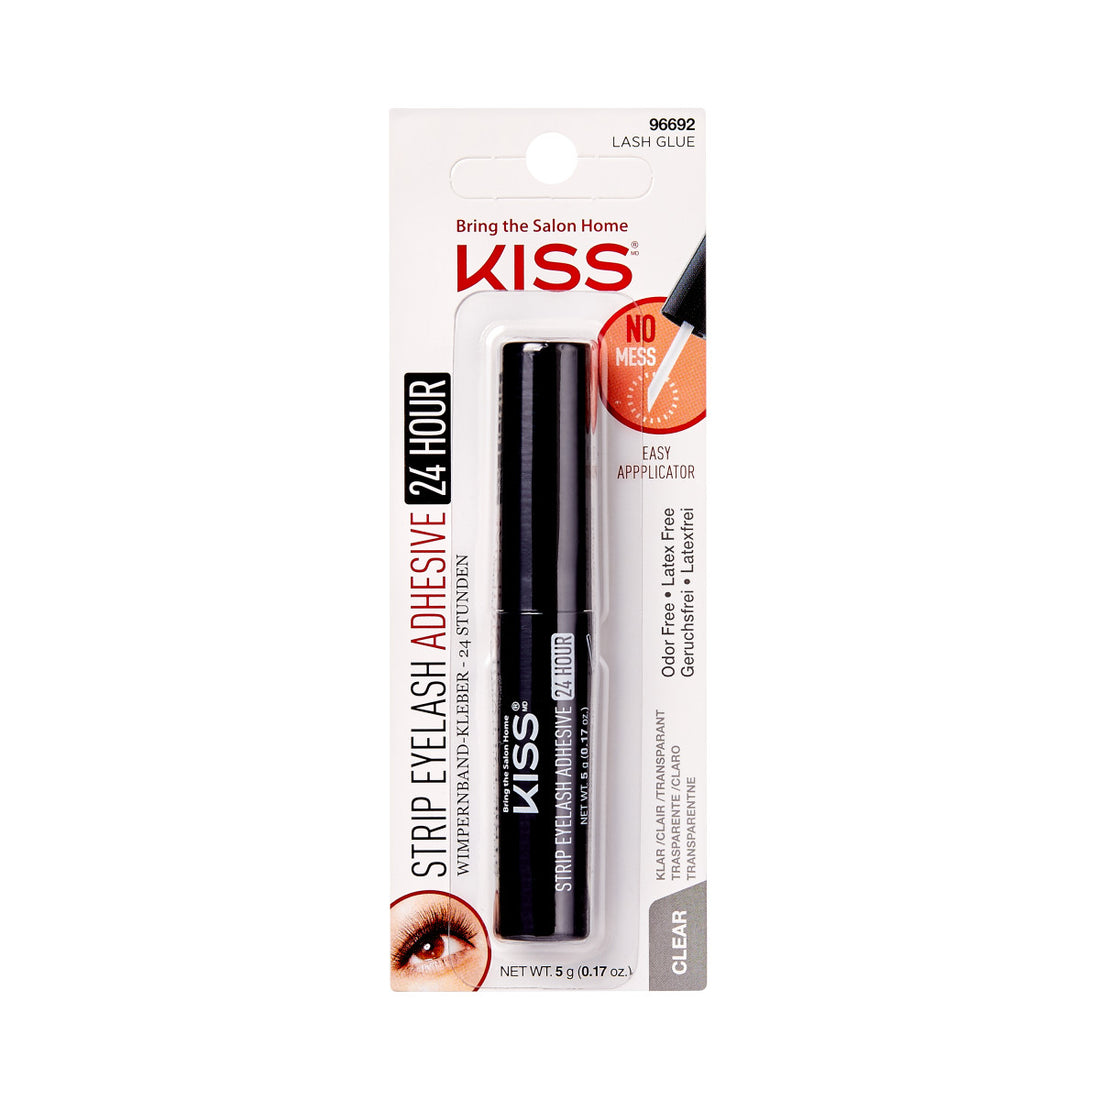 KISS 24 Hour Strip Lash Adhesive, Net Wt. 5g (0.17 oz.) - Clear